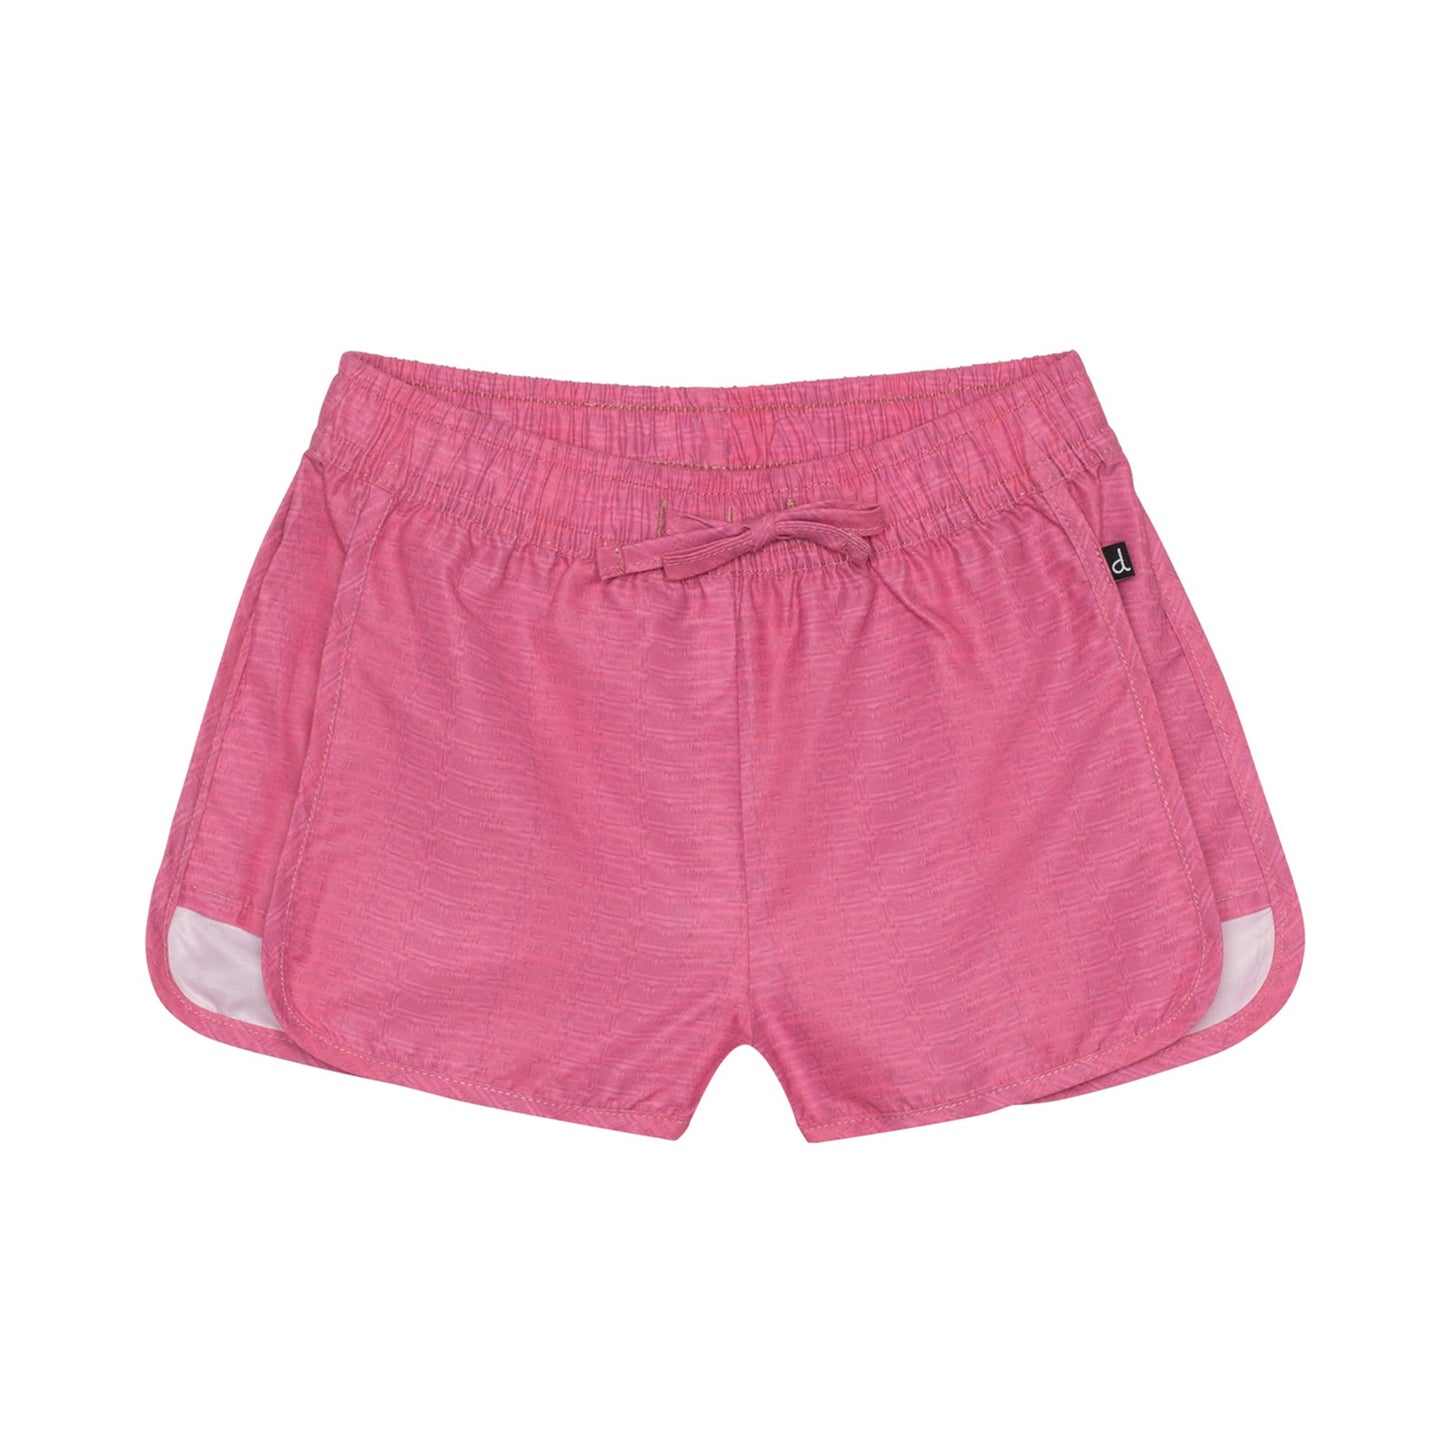 Pink Nectar Shorts